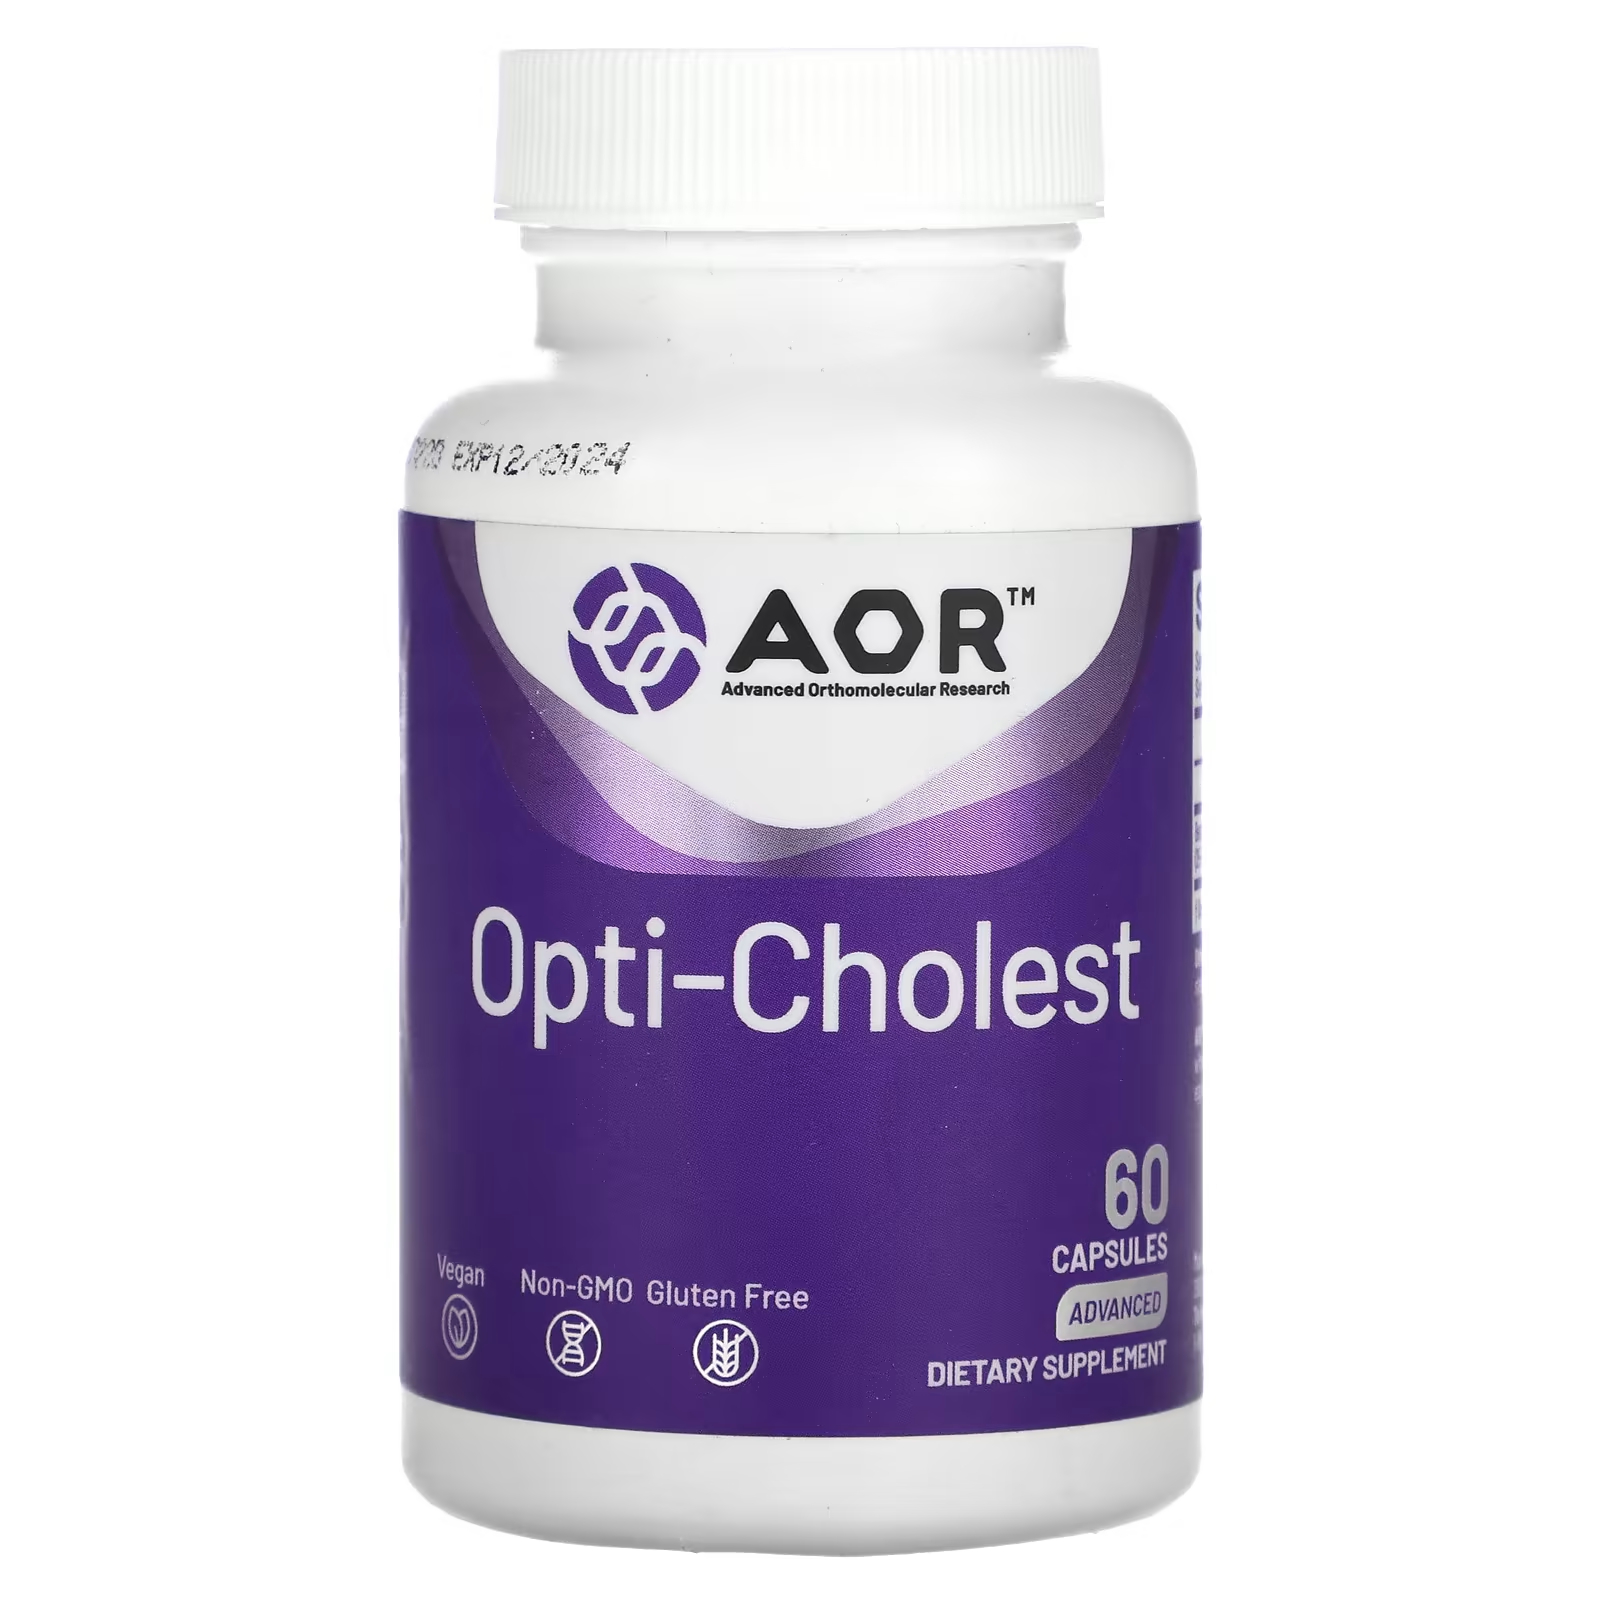 цена Передовые ортомолекулярные исследования AOR Opti-Cholest 60 капсул Advanced Orthomolecular Research AOR